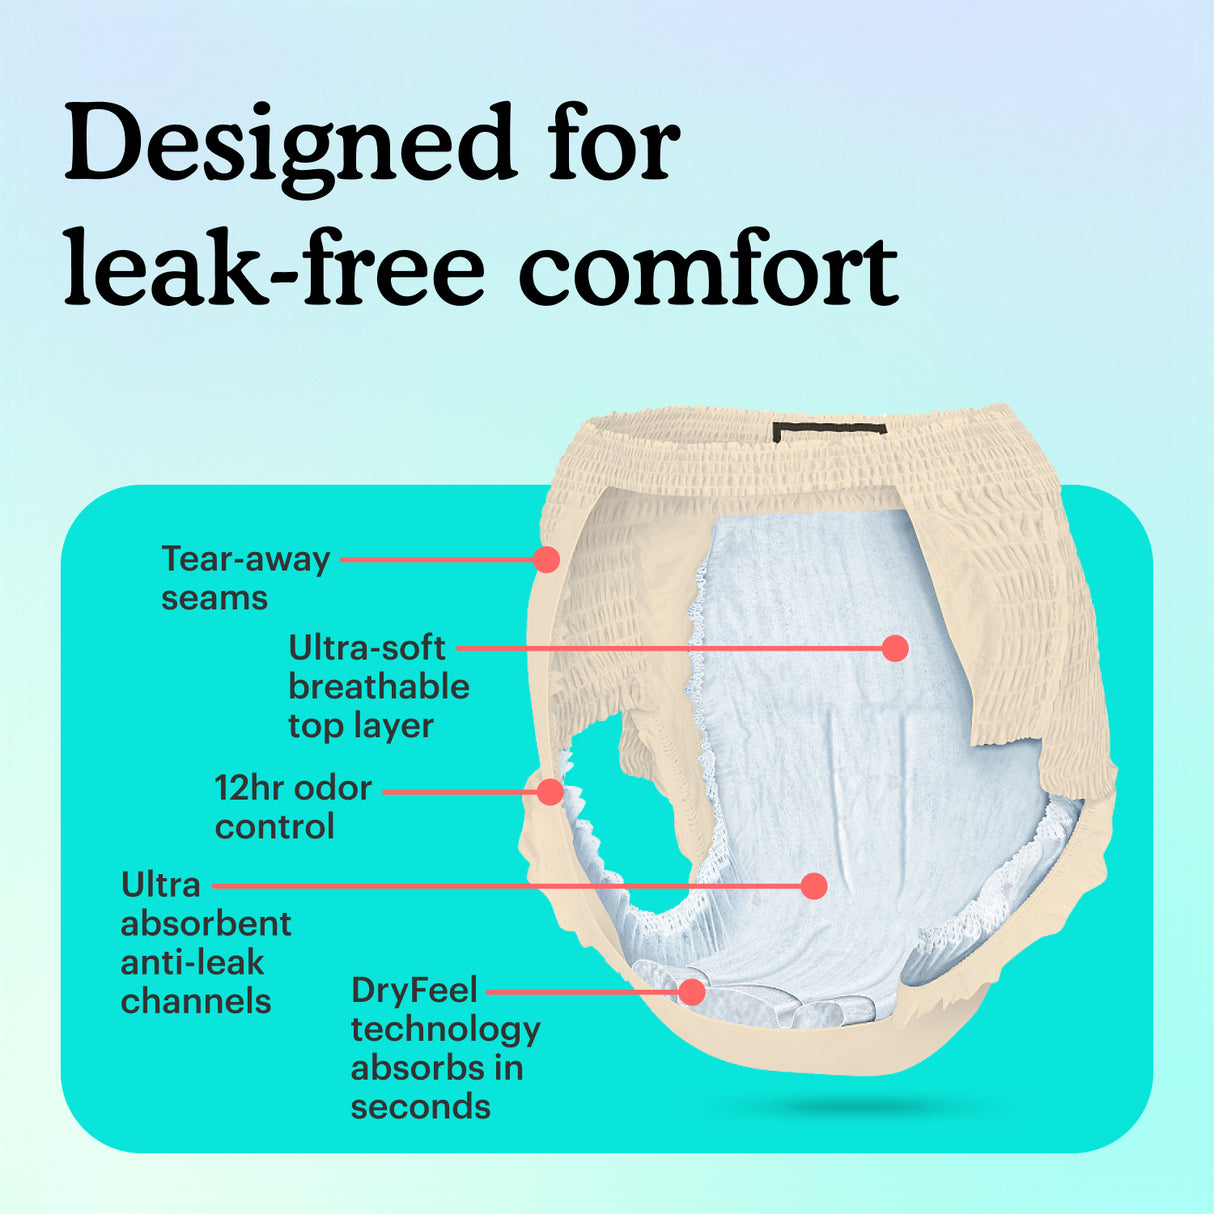 The Premium Maximum Plus Underwear for women is design for leak-free comfort